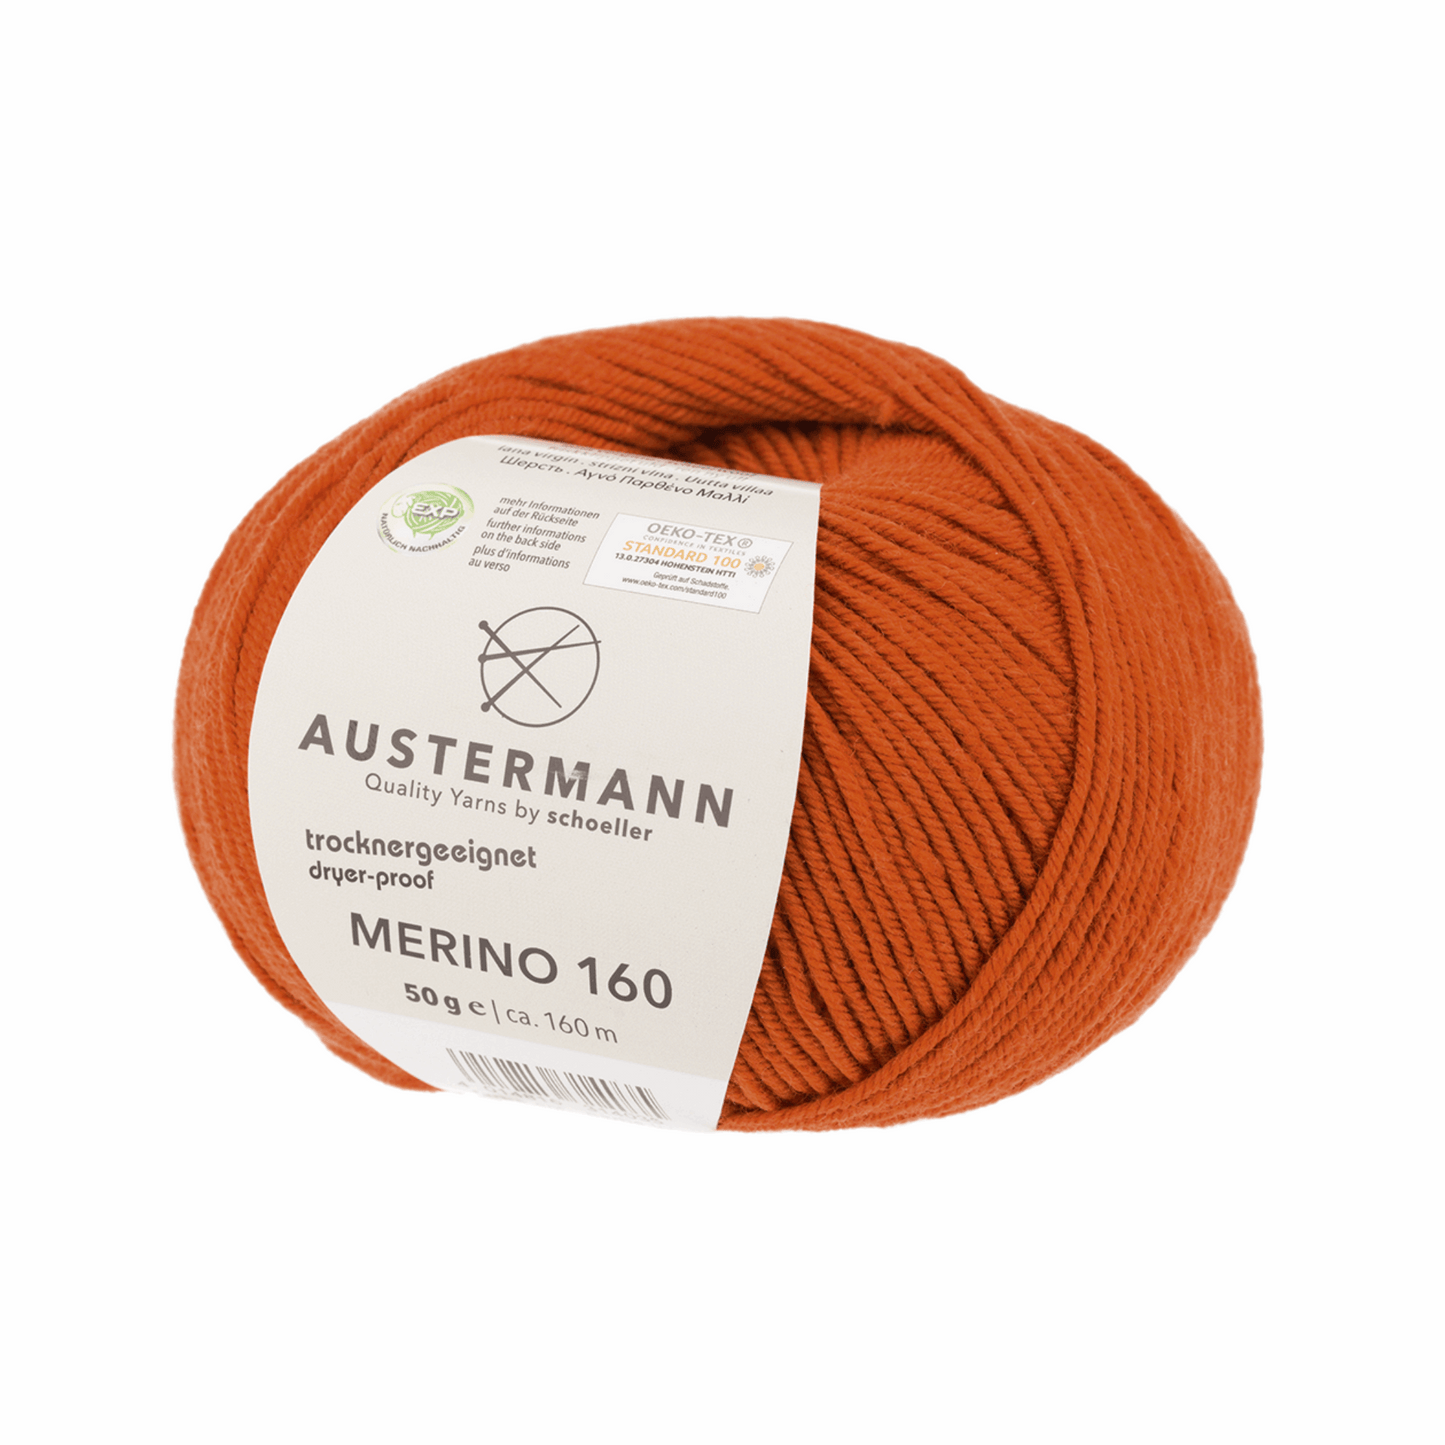 Austermann Merino 160 EXP 50g, 97610, Farbe terracotta 267